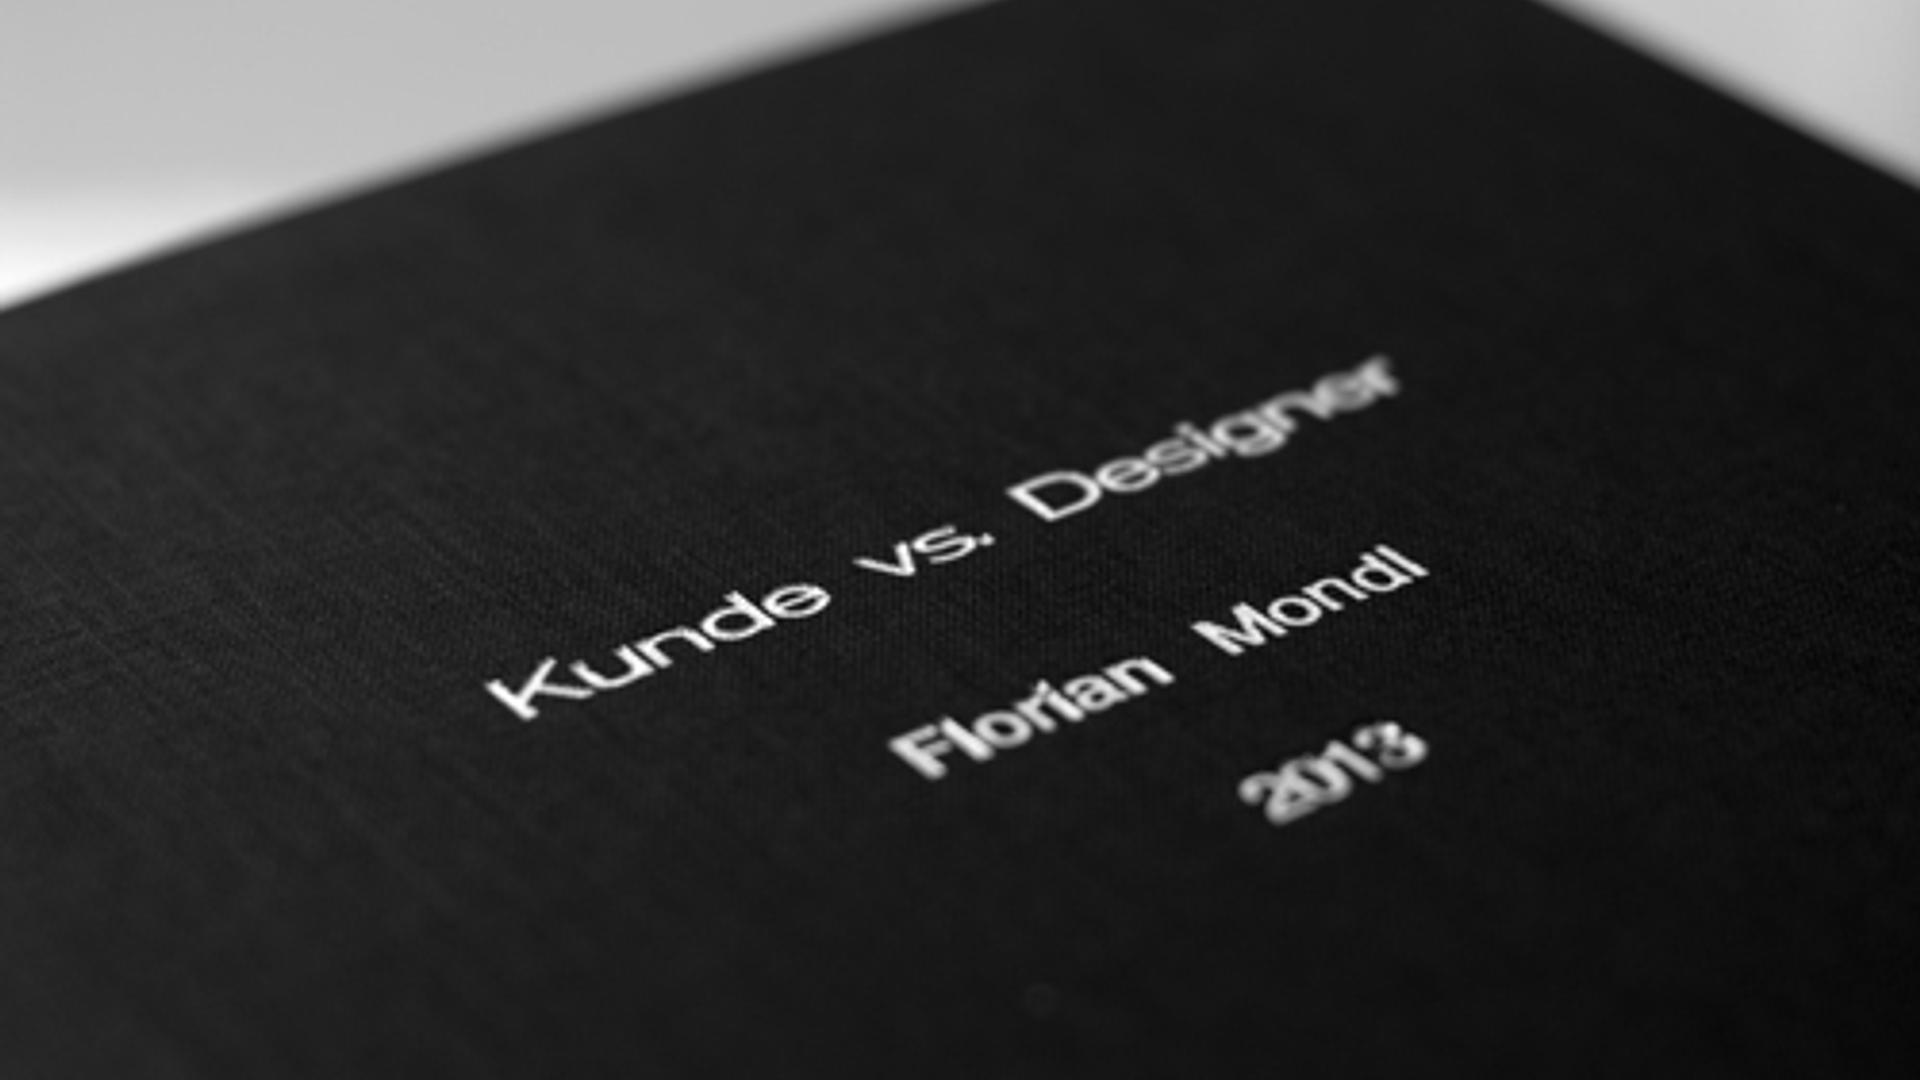 Project Masterthesis. Kunde vs. Designer